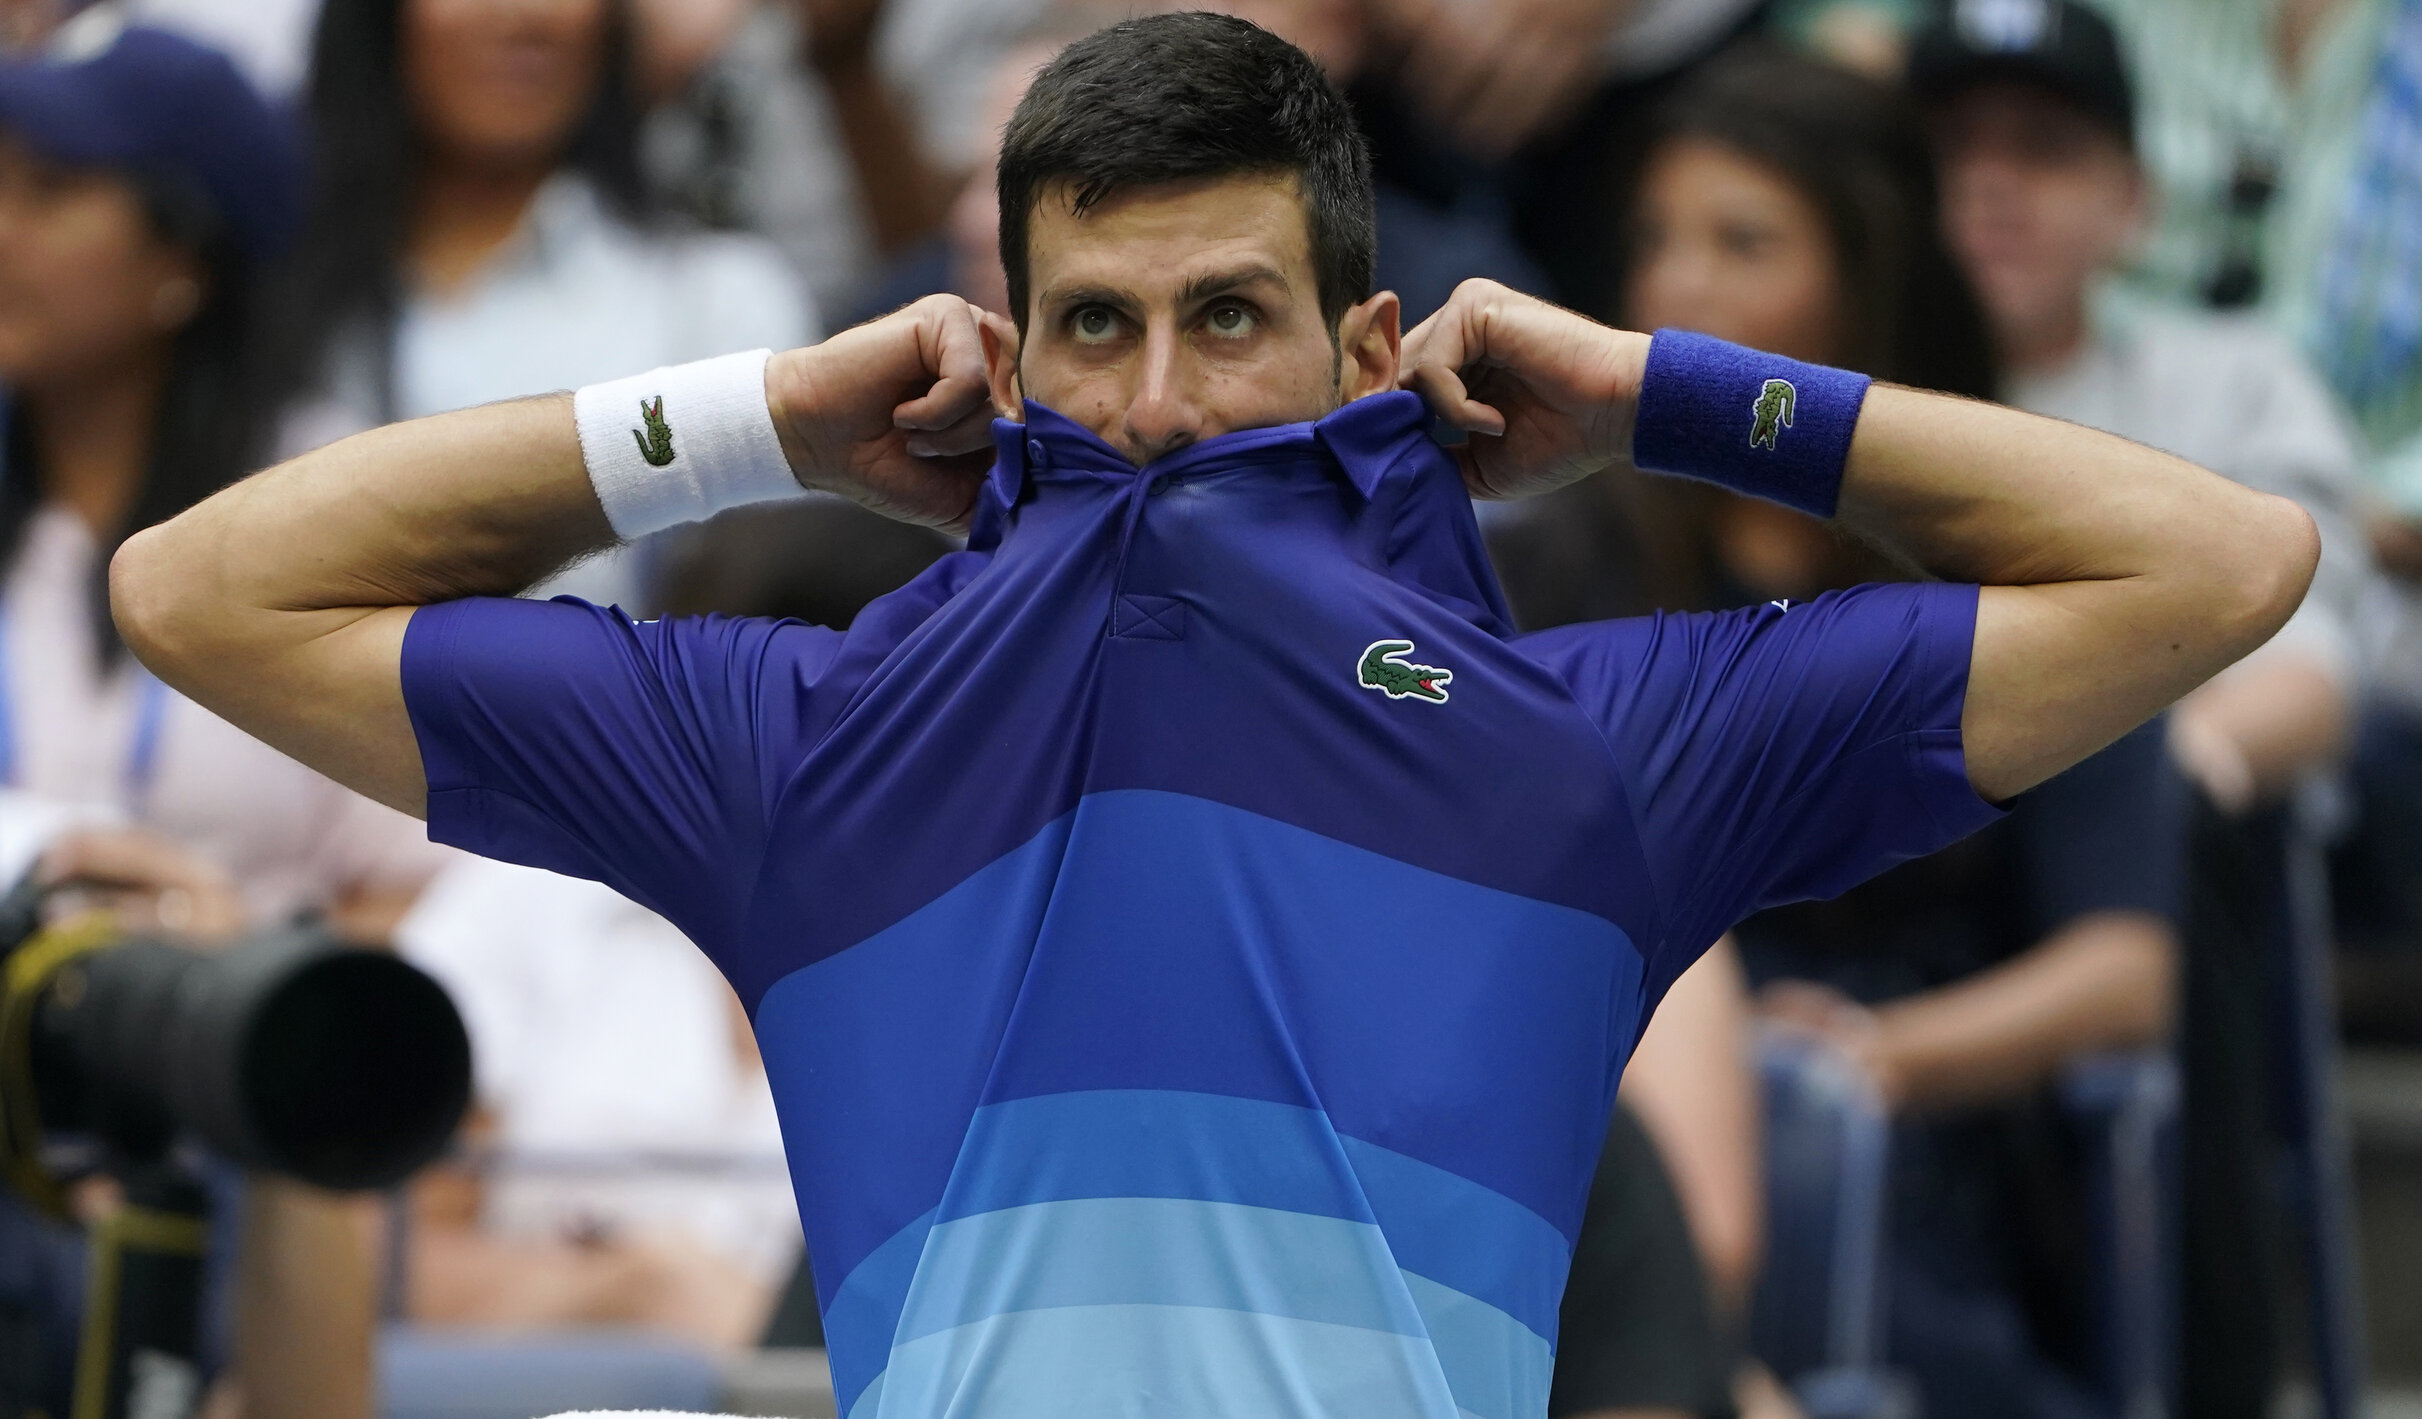 Novak Djokovic ar putea rata Australian Open din cauza restricțiilor anti-Covid impuse de organizatori